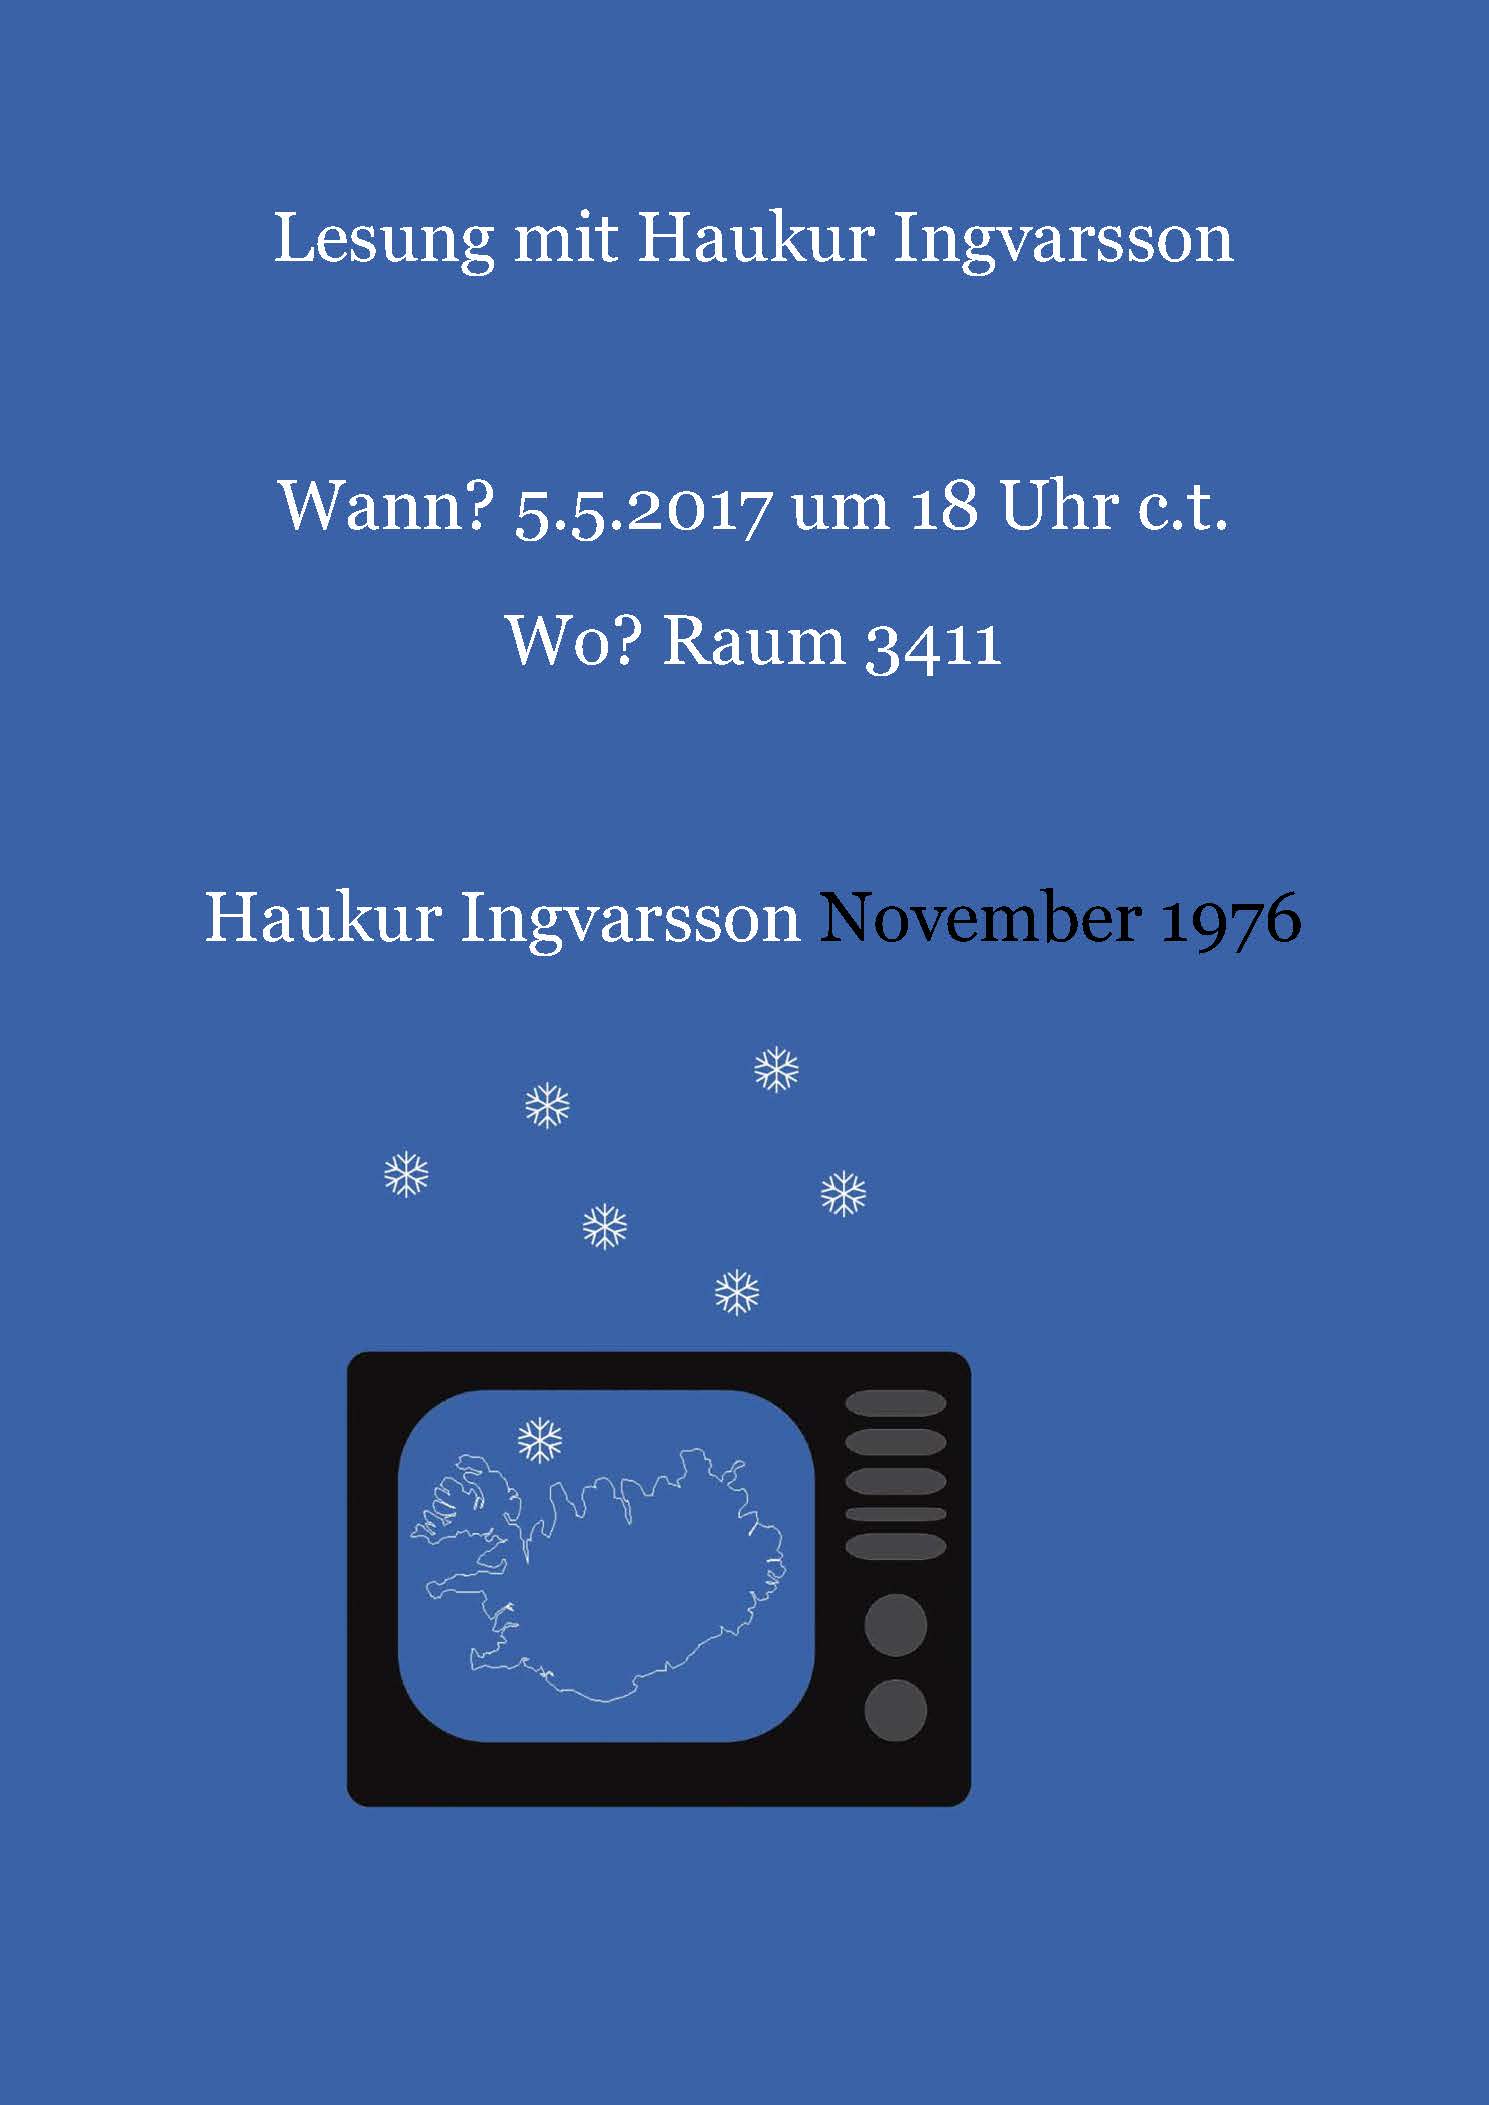 Ein Abend ohne Fernseher - eine Lesung mit dem isländischen Autor Haukur Ingvarsson